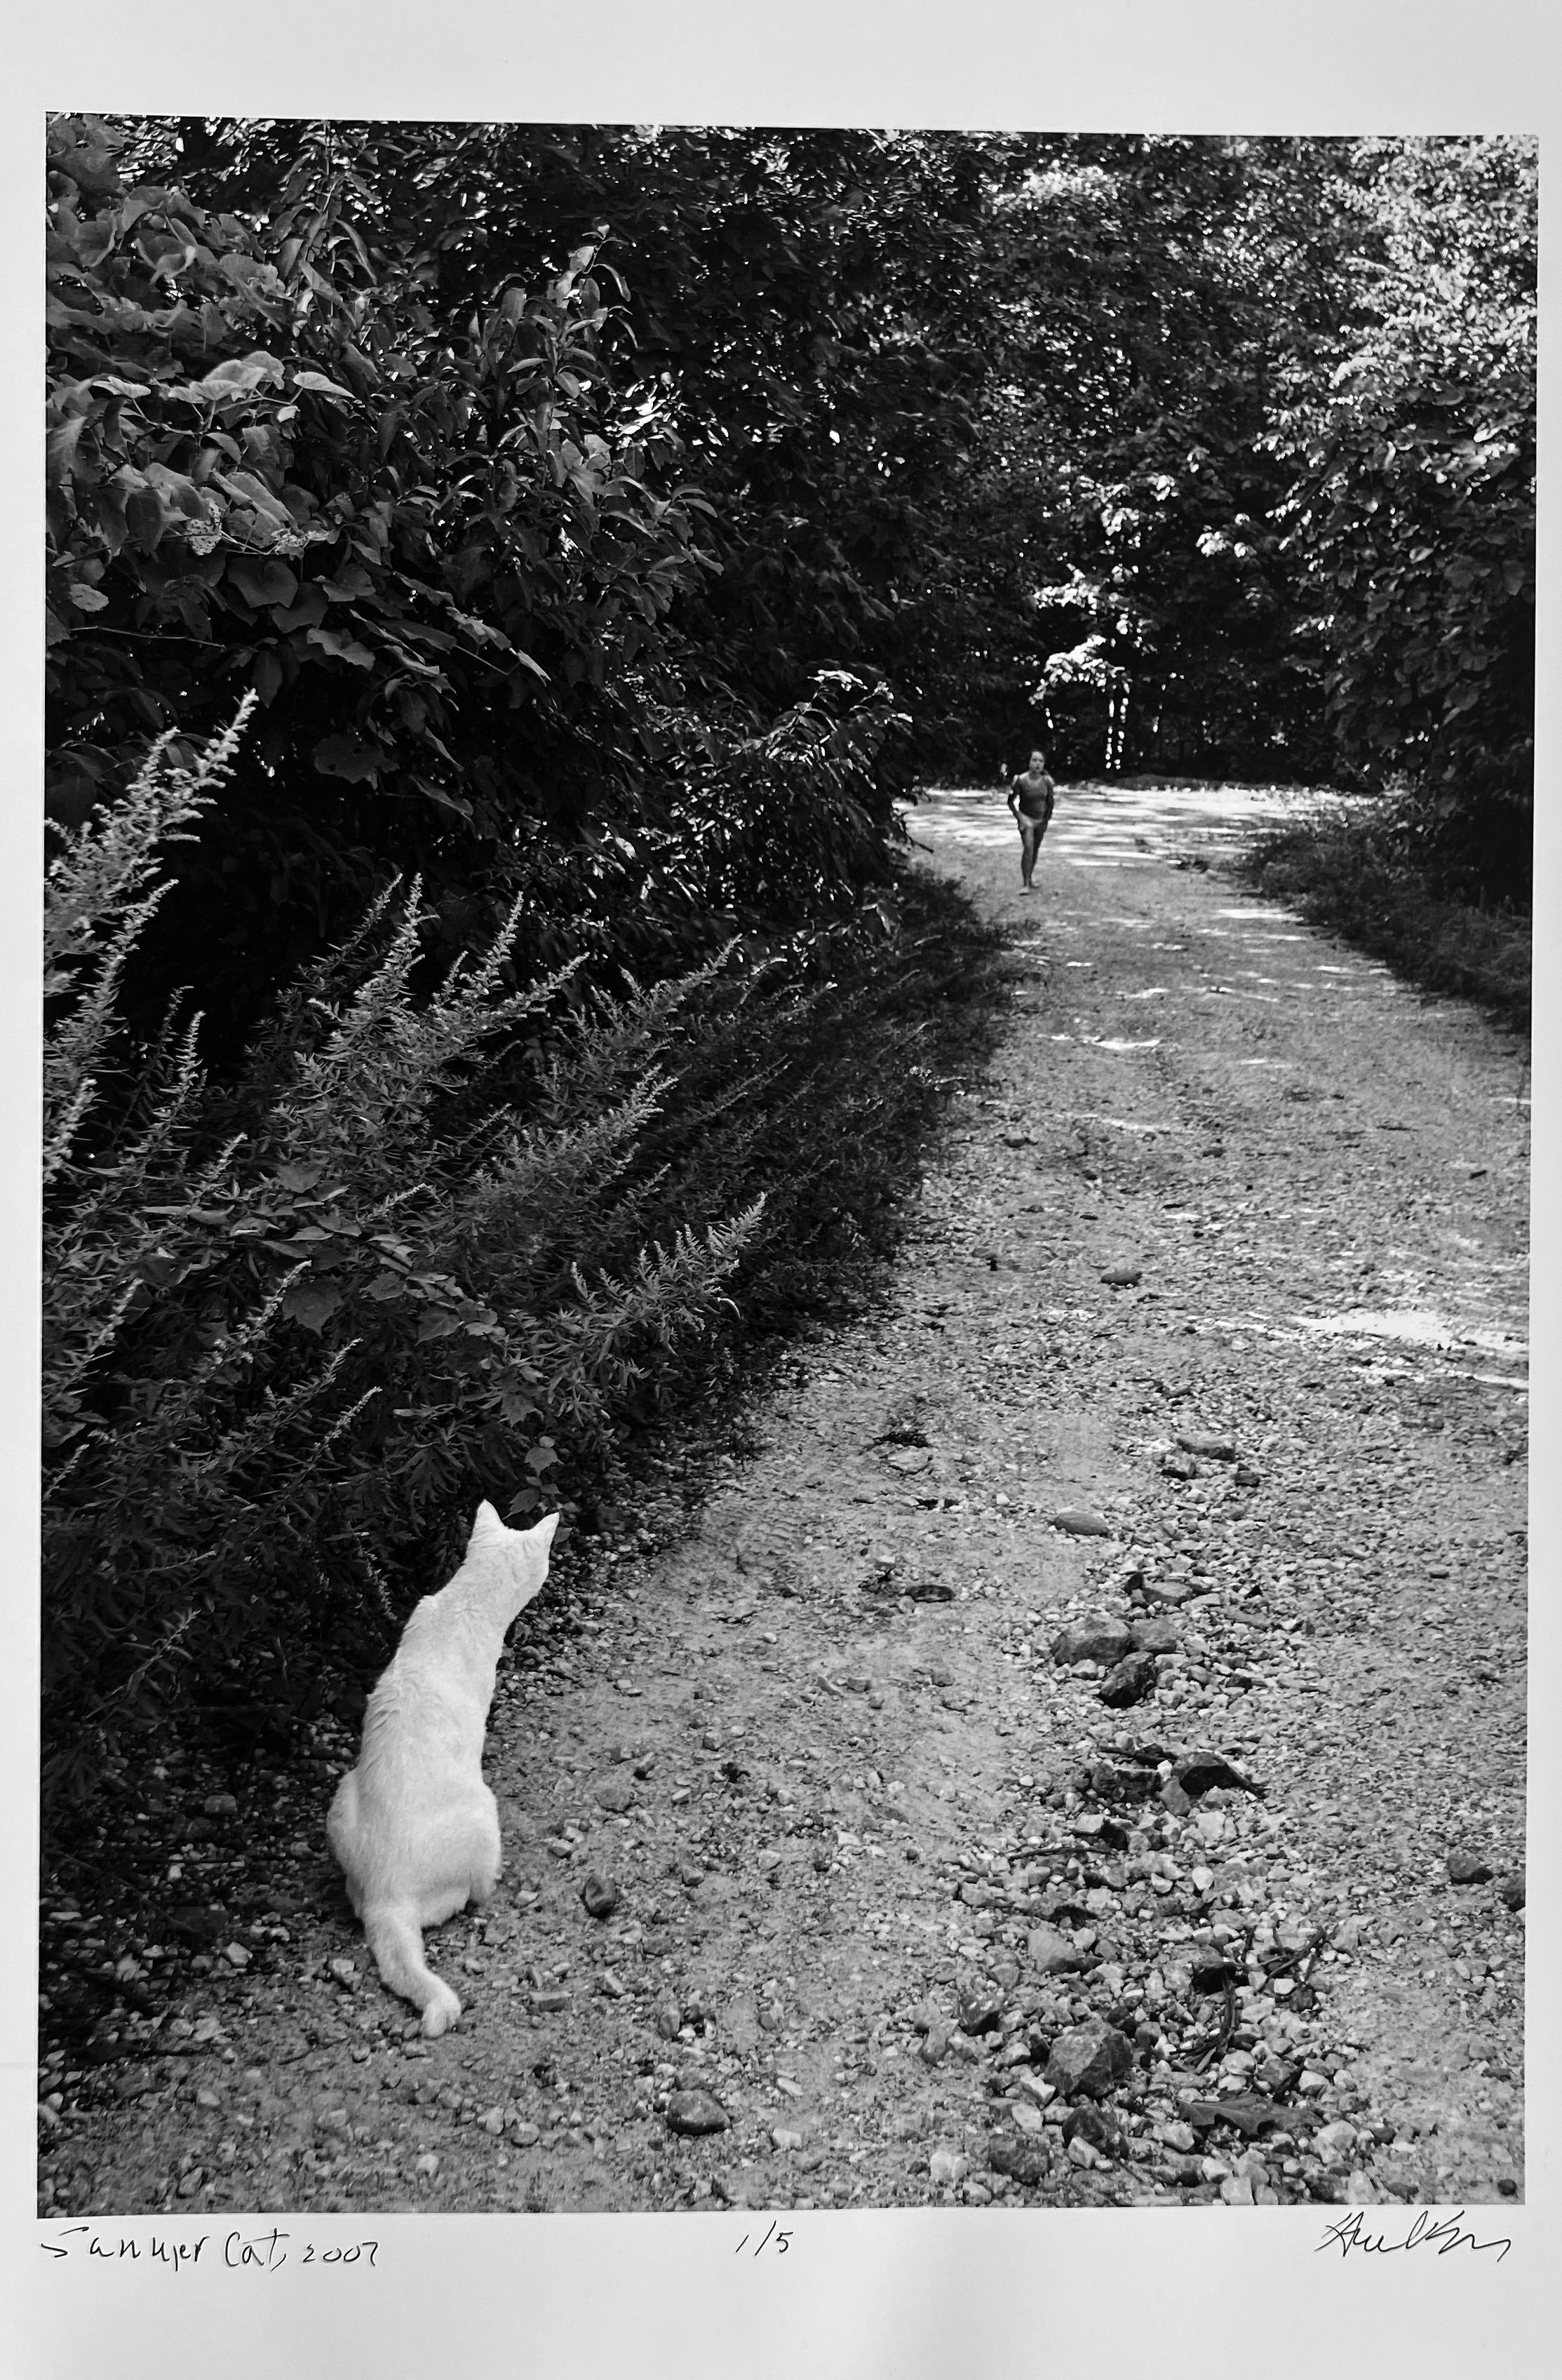 Chat d'été, Upstate New York, photographie documentaire de paysage en noir et blanc - Photograph de Hank Gans